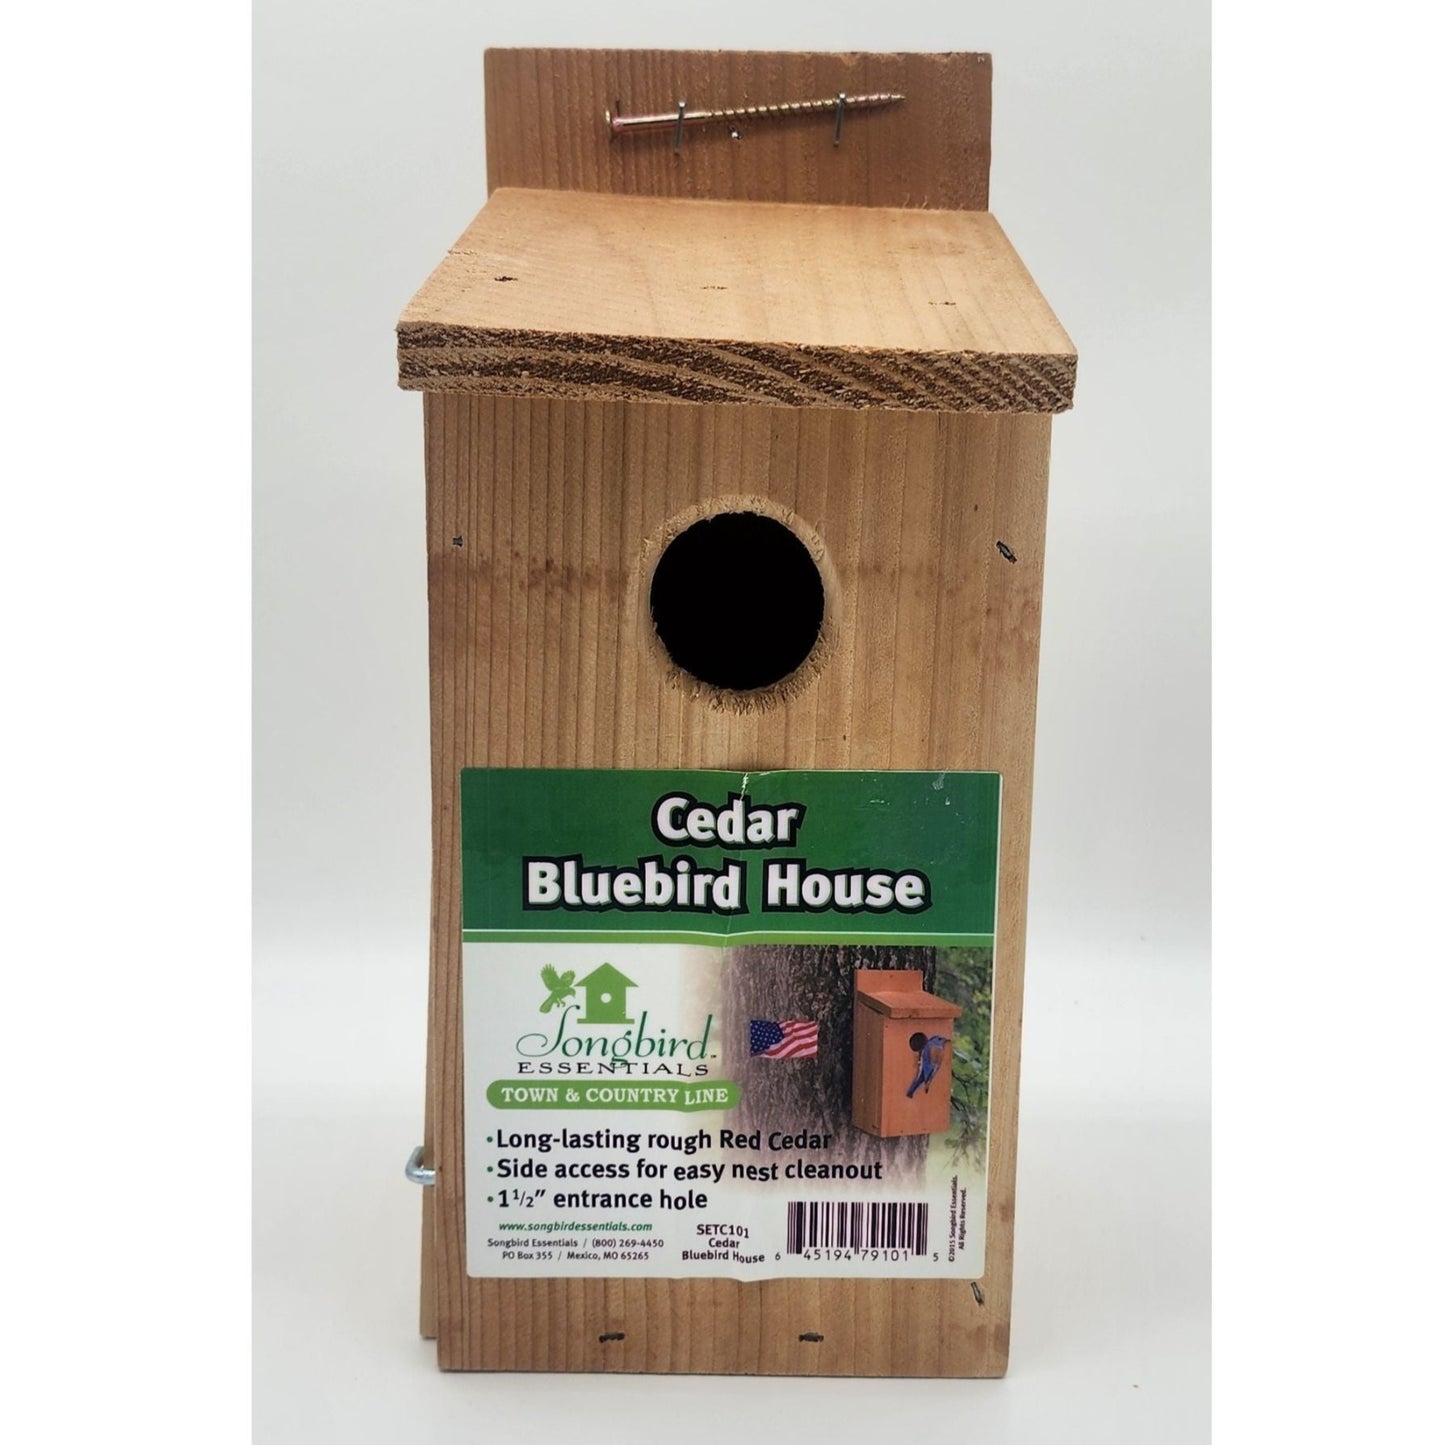 Cedar bluebird house with lable